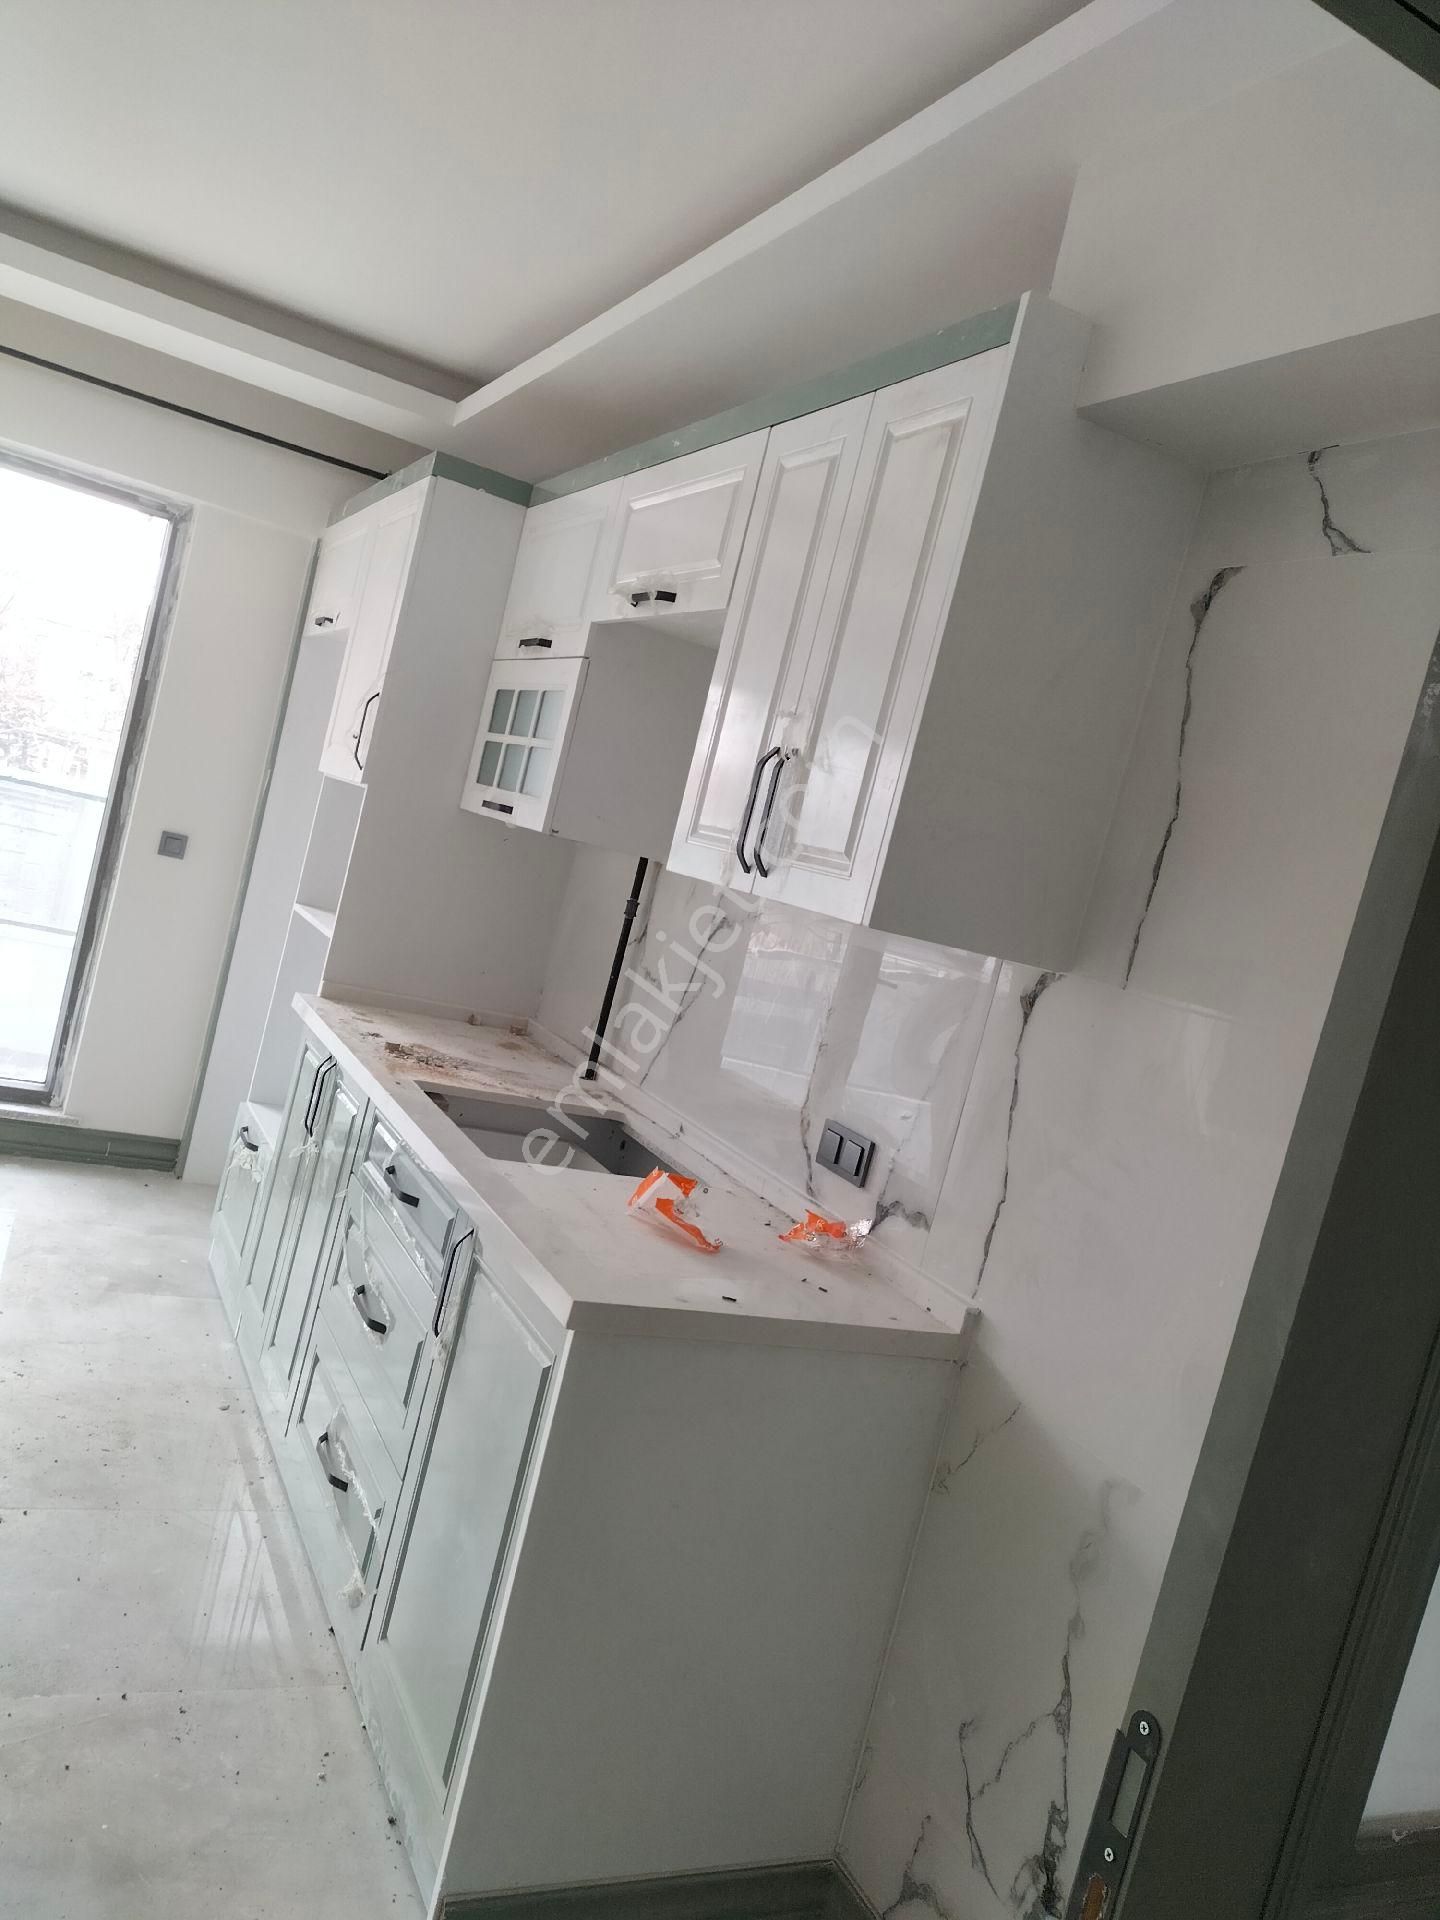 Karatay Karaaslandede Satılık Müstakil Ev Karaaslan Dede Mahallesi'nde satılık dubleks 210 metrekare Bodrumlu villa